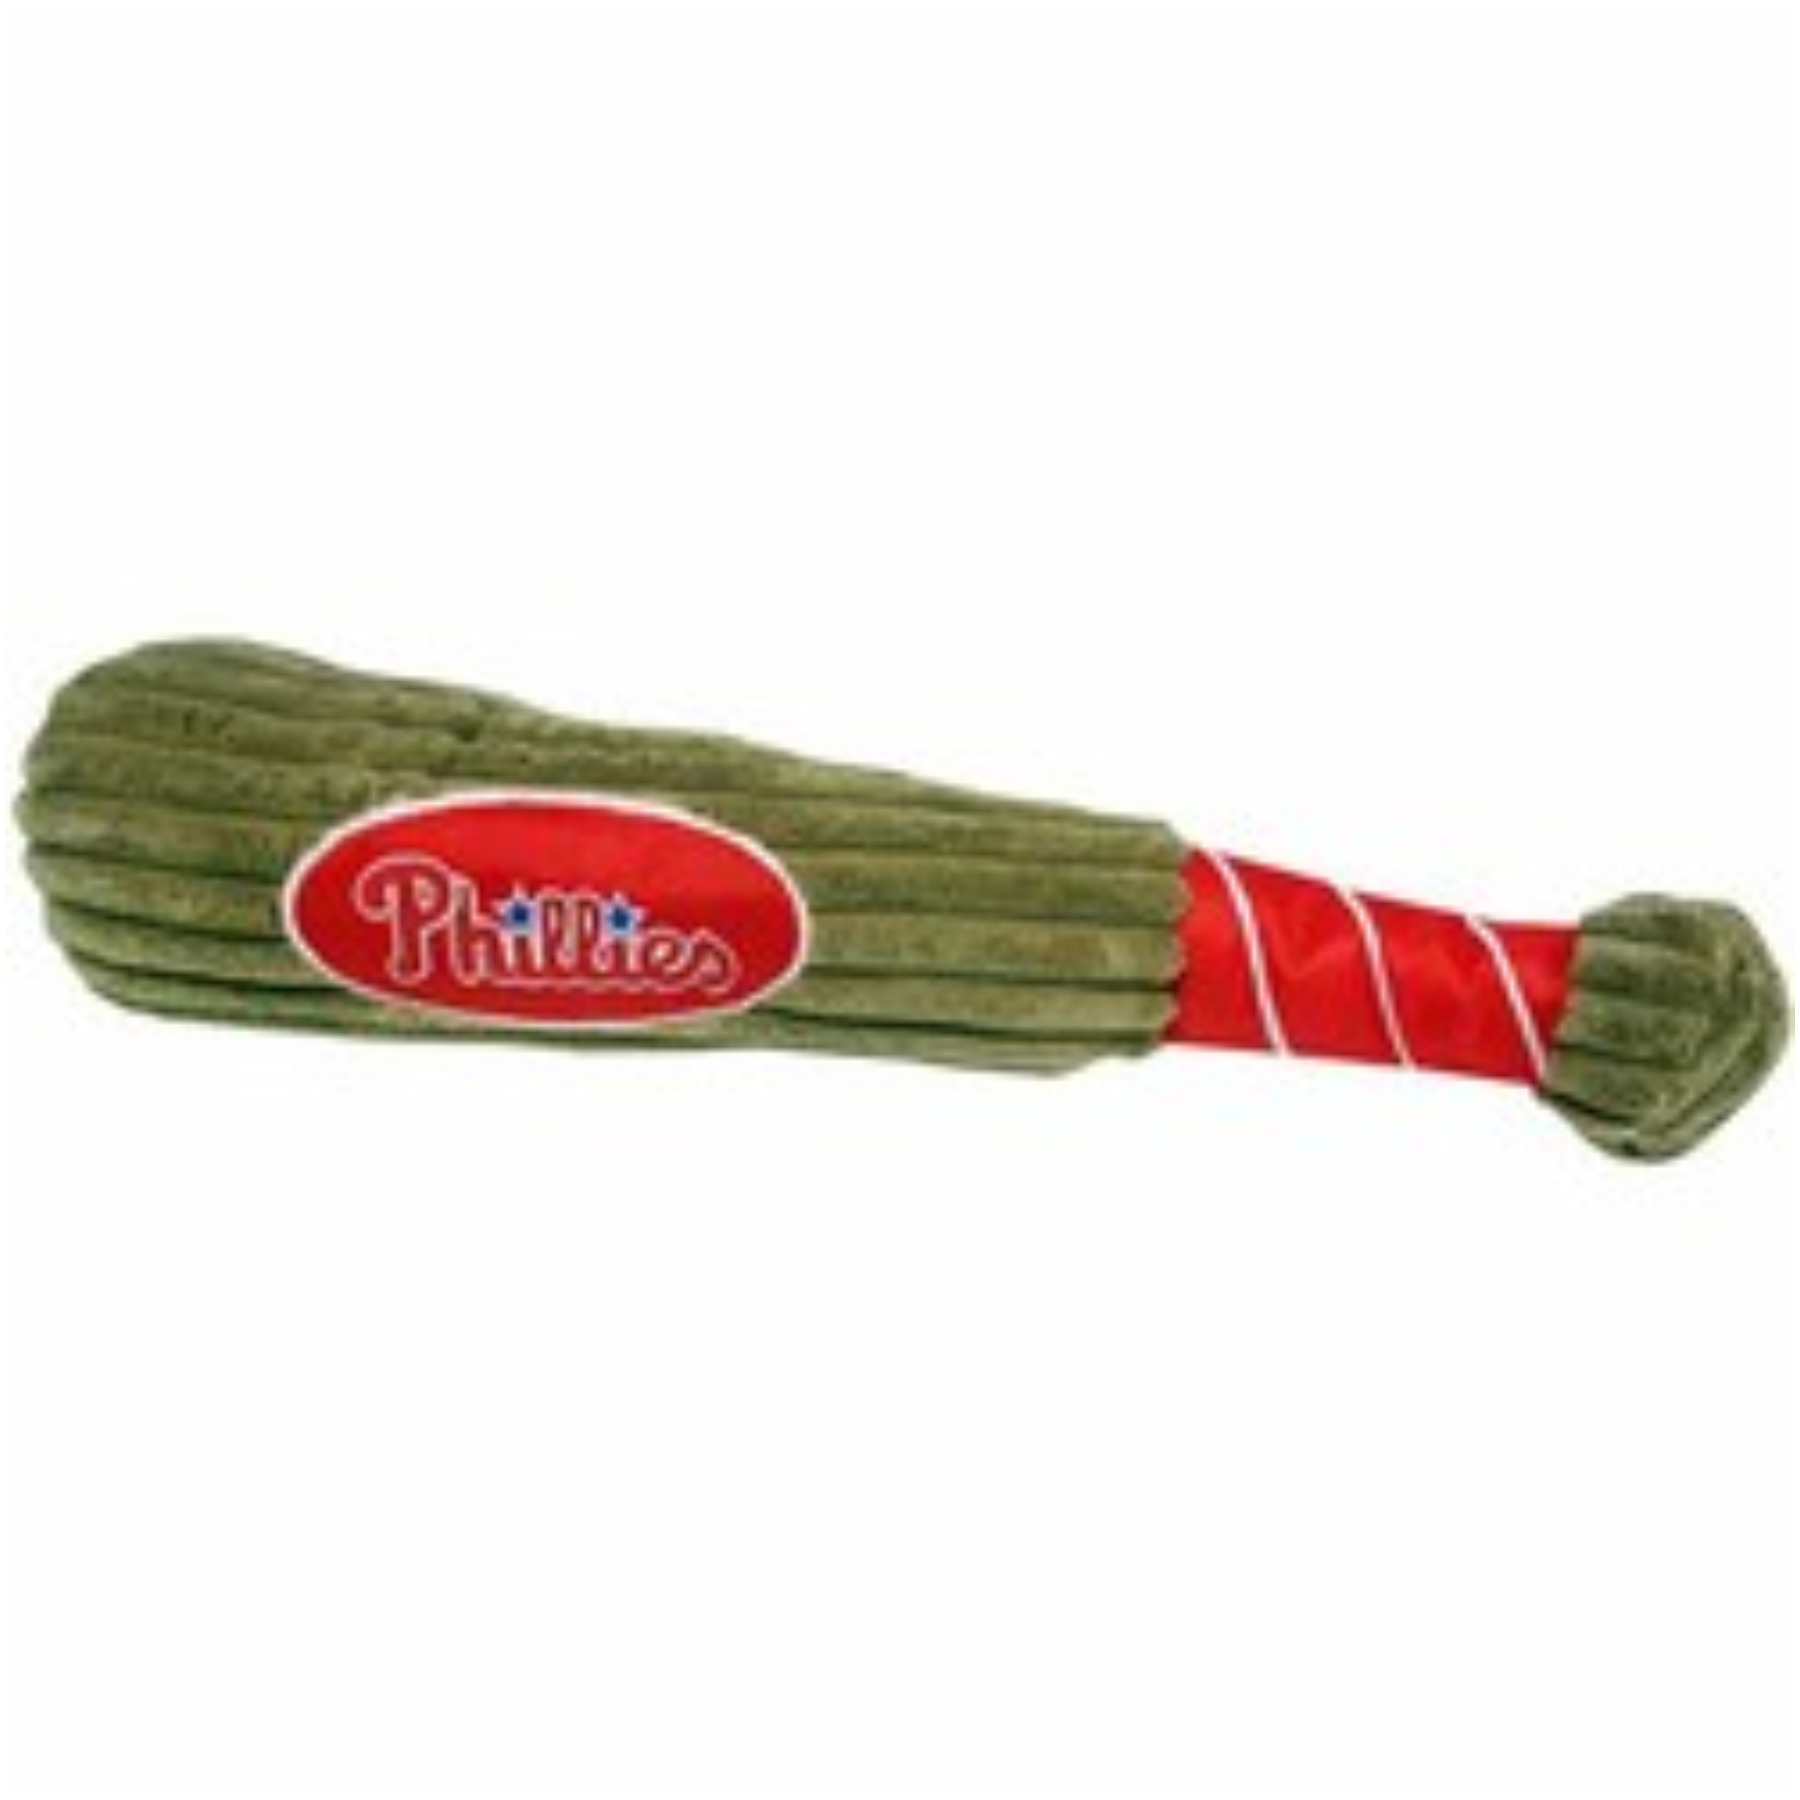 Philadelphia Phillies Bat Toy